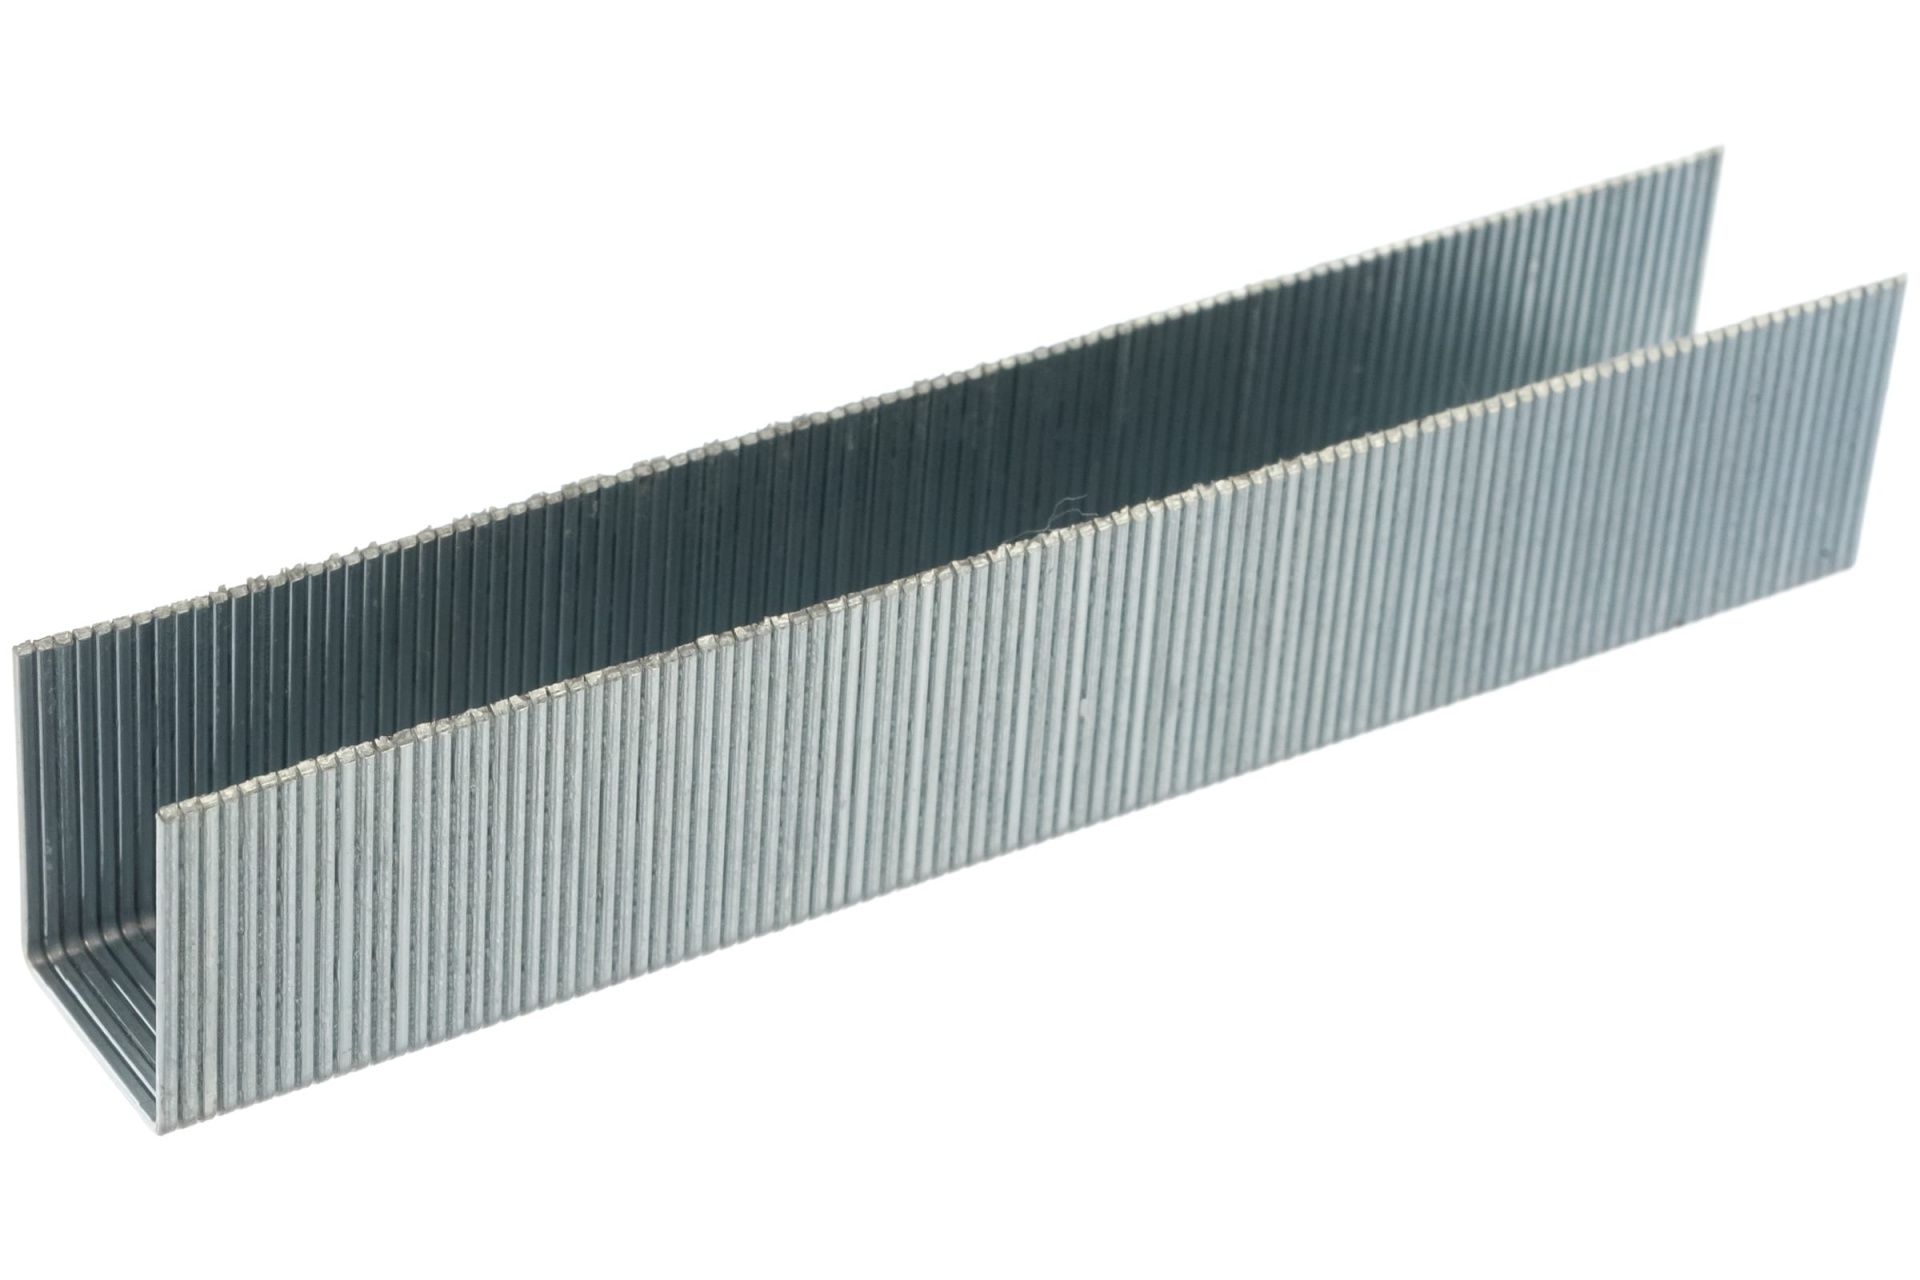 Скобы для степлера 10 мм, Тип 53, толщина 0,74 мм, ширина 11,4 мм, (1000 шт) коробка ПРАКТИКА серия Мастер